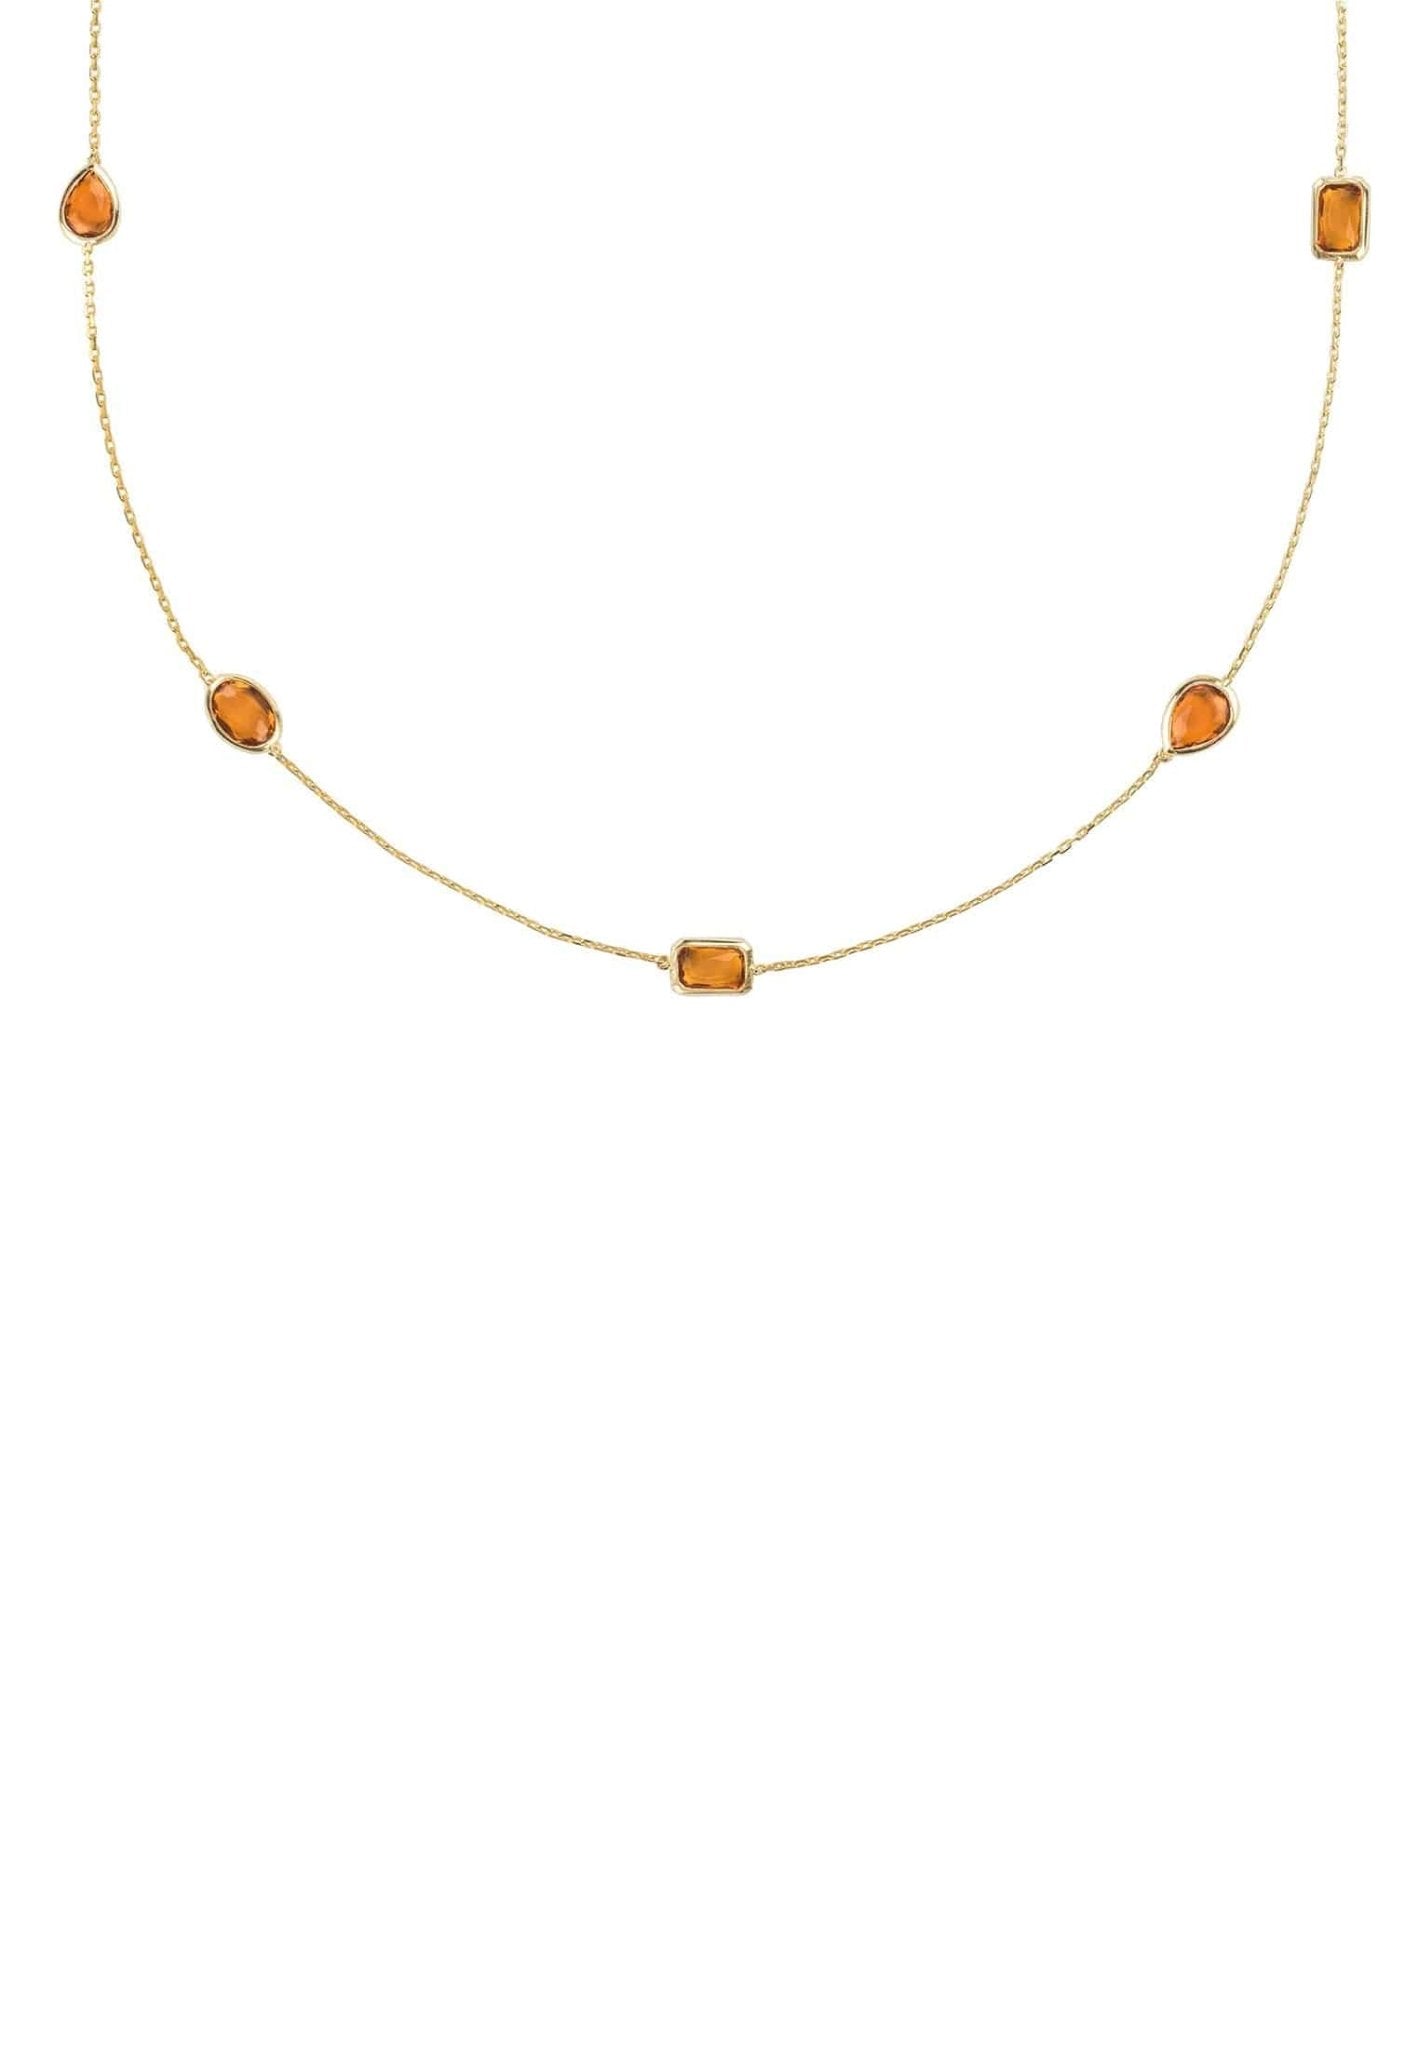 Venice 120Cm Long Chain Necklace Gold Citrine - LATELITA Necklaces